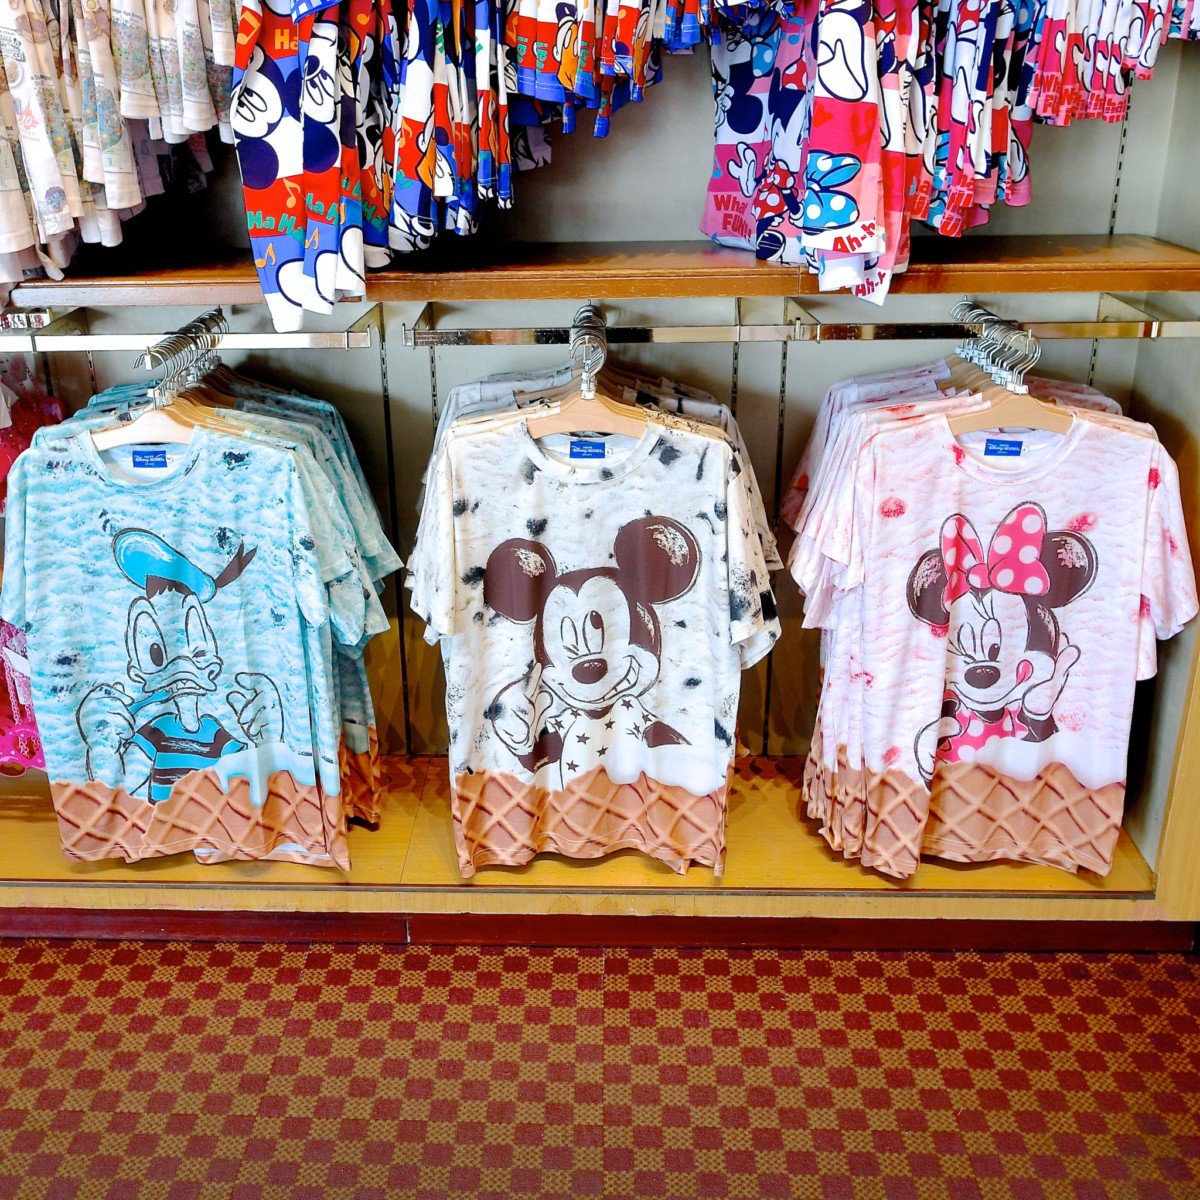 Mezzomikiのディズニーブログ Twitter પર 18春夏版 東京ディズニーランド Tシャツ パーカーまとめ 詳しくは T Co Ga1kupgwsu